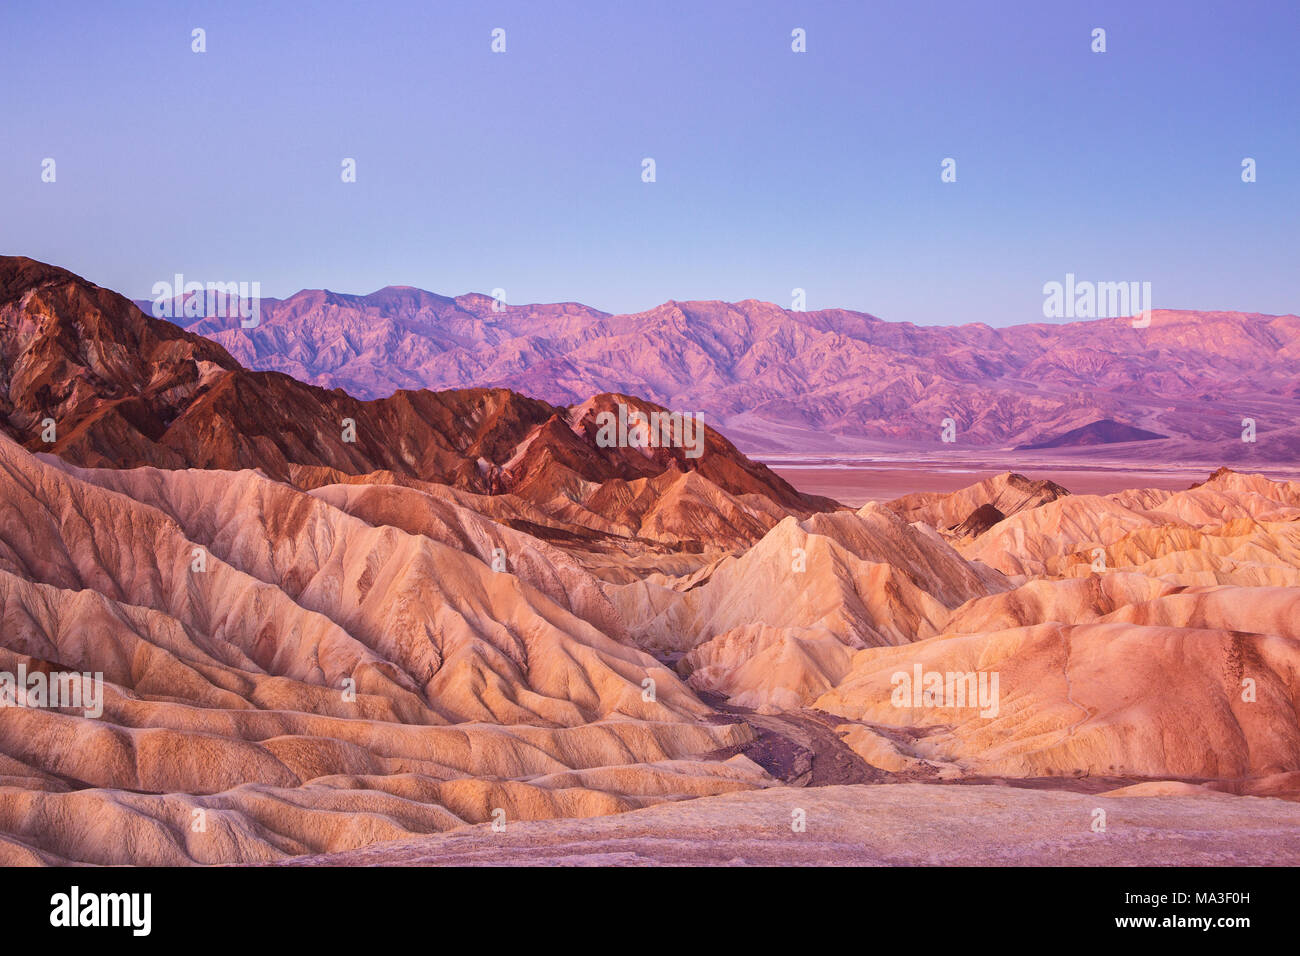 Vista panoramica dal Zabriskie Point, mostrando le circonvoluzioni, contrasti di colori e texture nella roccia erosa all'alba, Amargosa Range, Death Valley in Deat Foto Stock